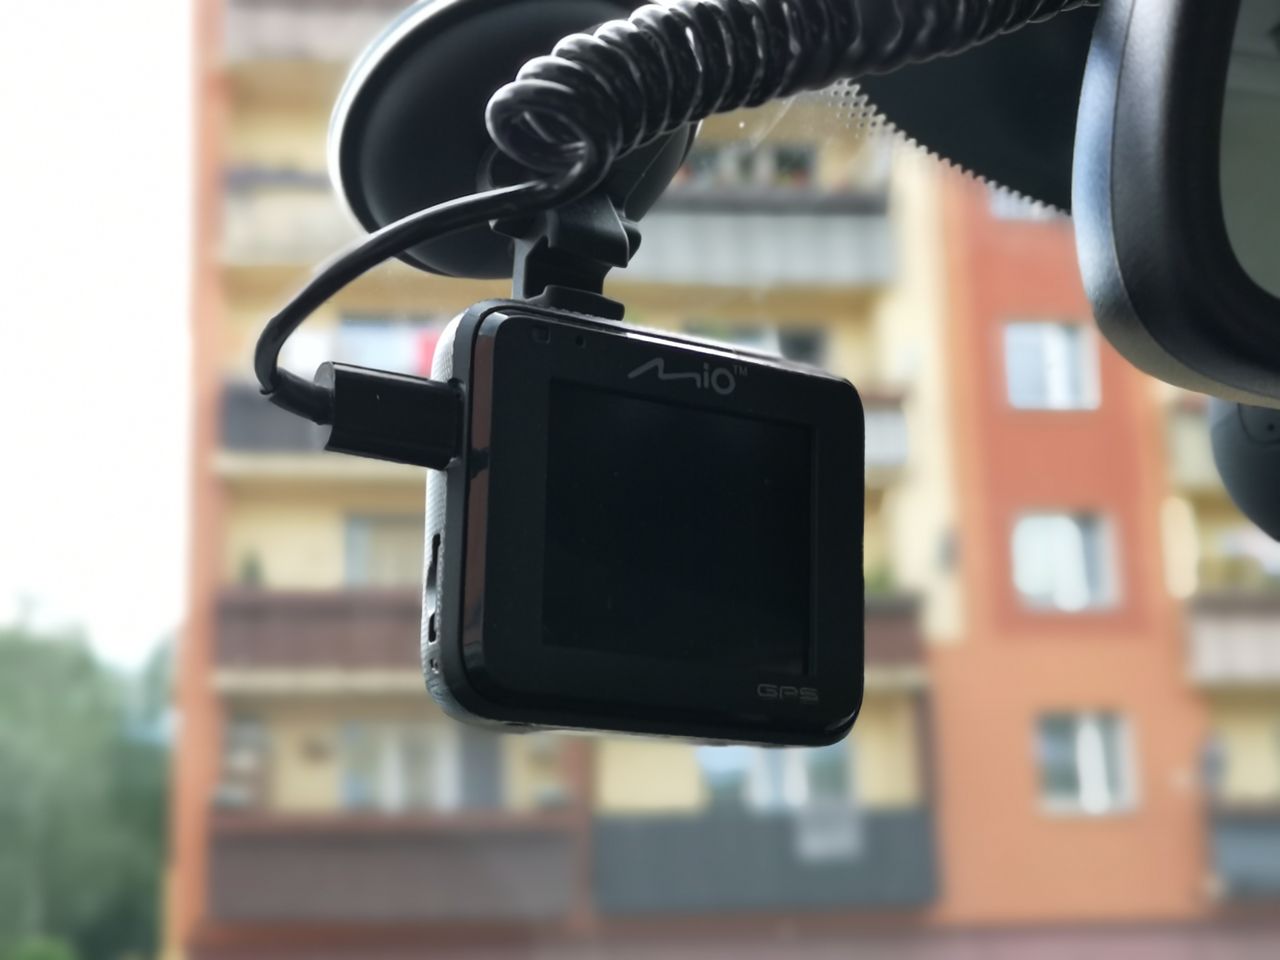 Krótki test Mio MiVue C330: wielofunkcyjna kamerka w rozsądnej cenie